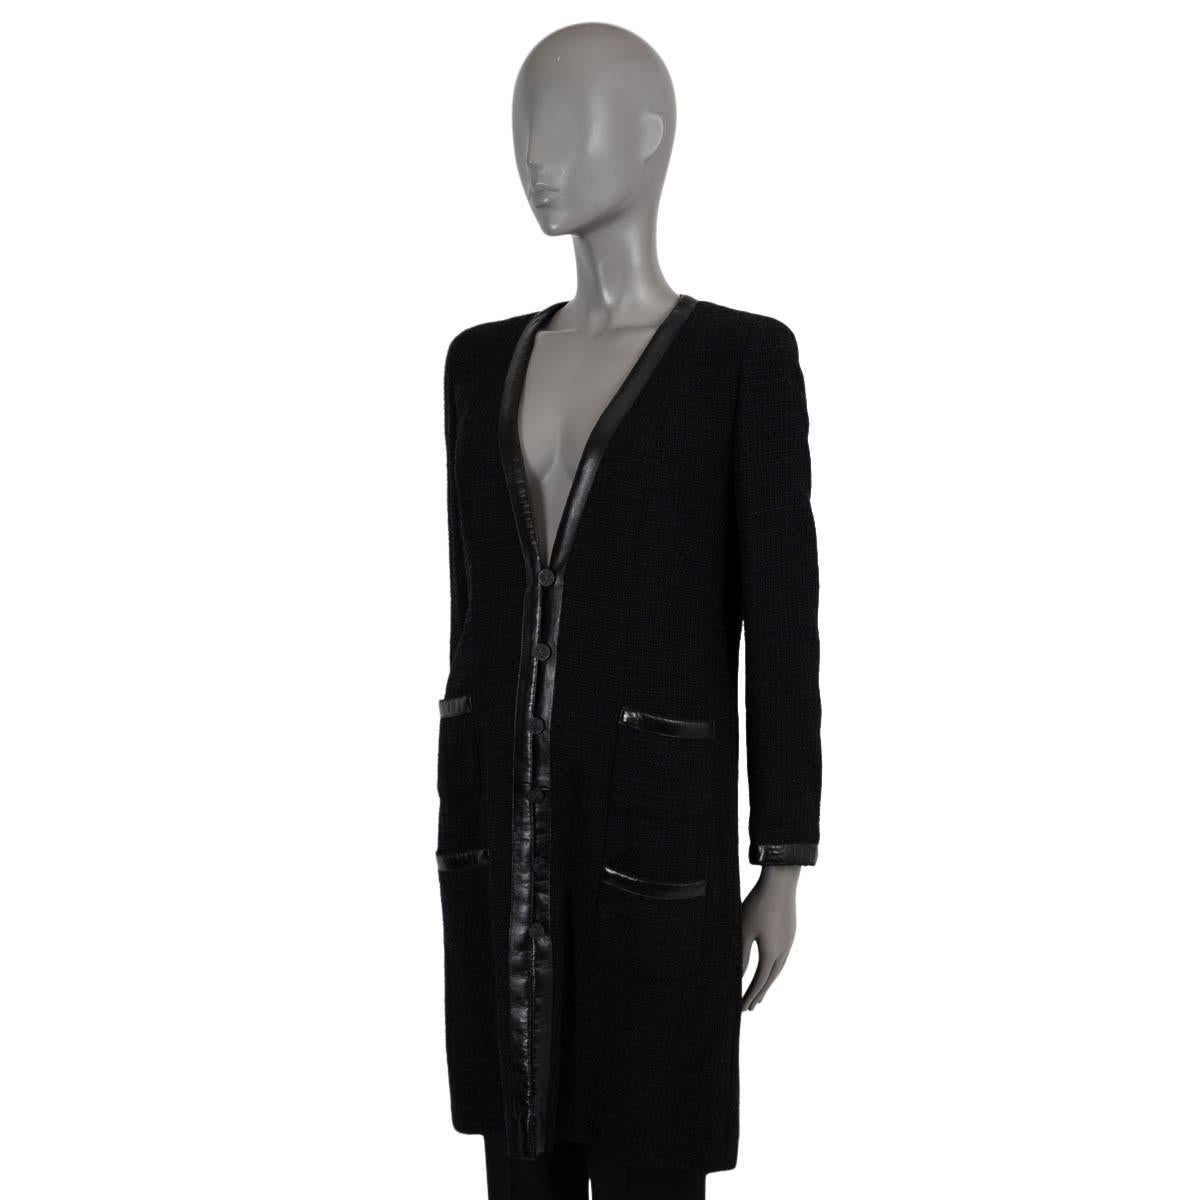 Manteau en tweed 100% authentique de Chanel en polyamide noir (64%), coton (24%), rayonne (7%) et lin (5%). Garni de cuir au niveau de l'encolure en V, des poignets et des poches. Il se ferme par des boutons CC noirs sur le devant et est doublé de